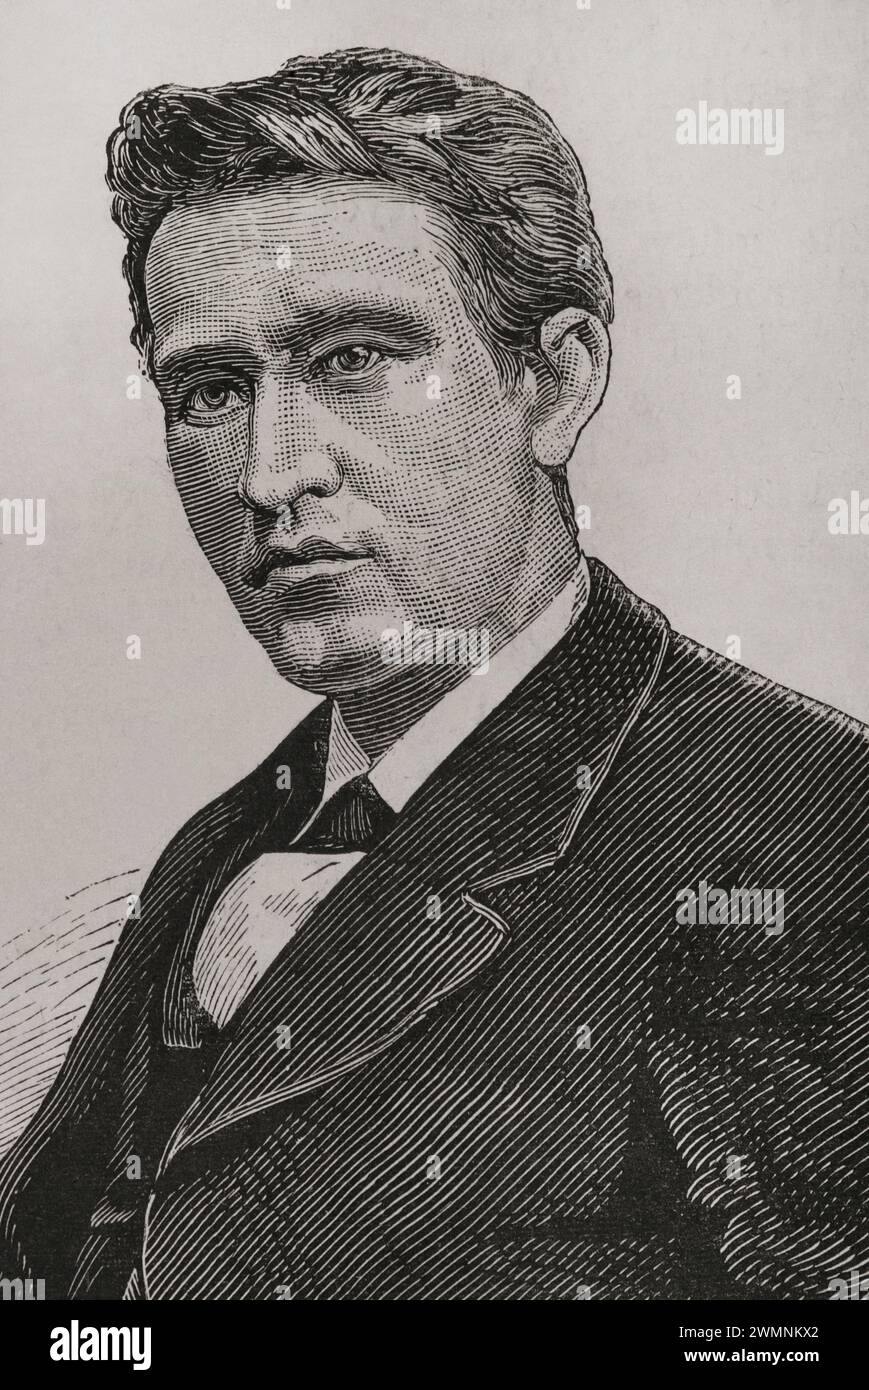 Thomas Alva Edison (1847-1931) Inventeur américain. Portrait. Gravure. La Ilustración Española y Americana (illustration espagnole et américaine), 1878. Banque D'Images